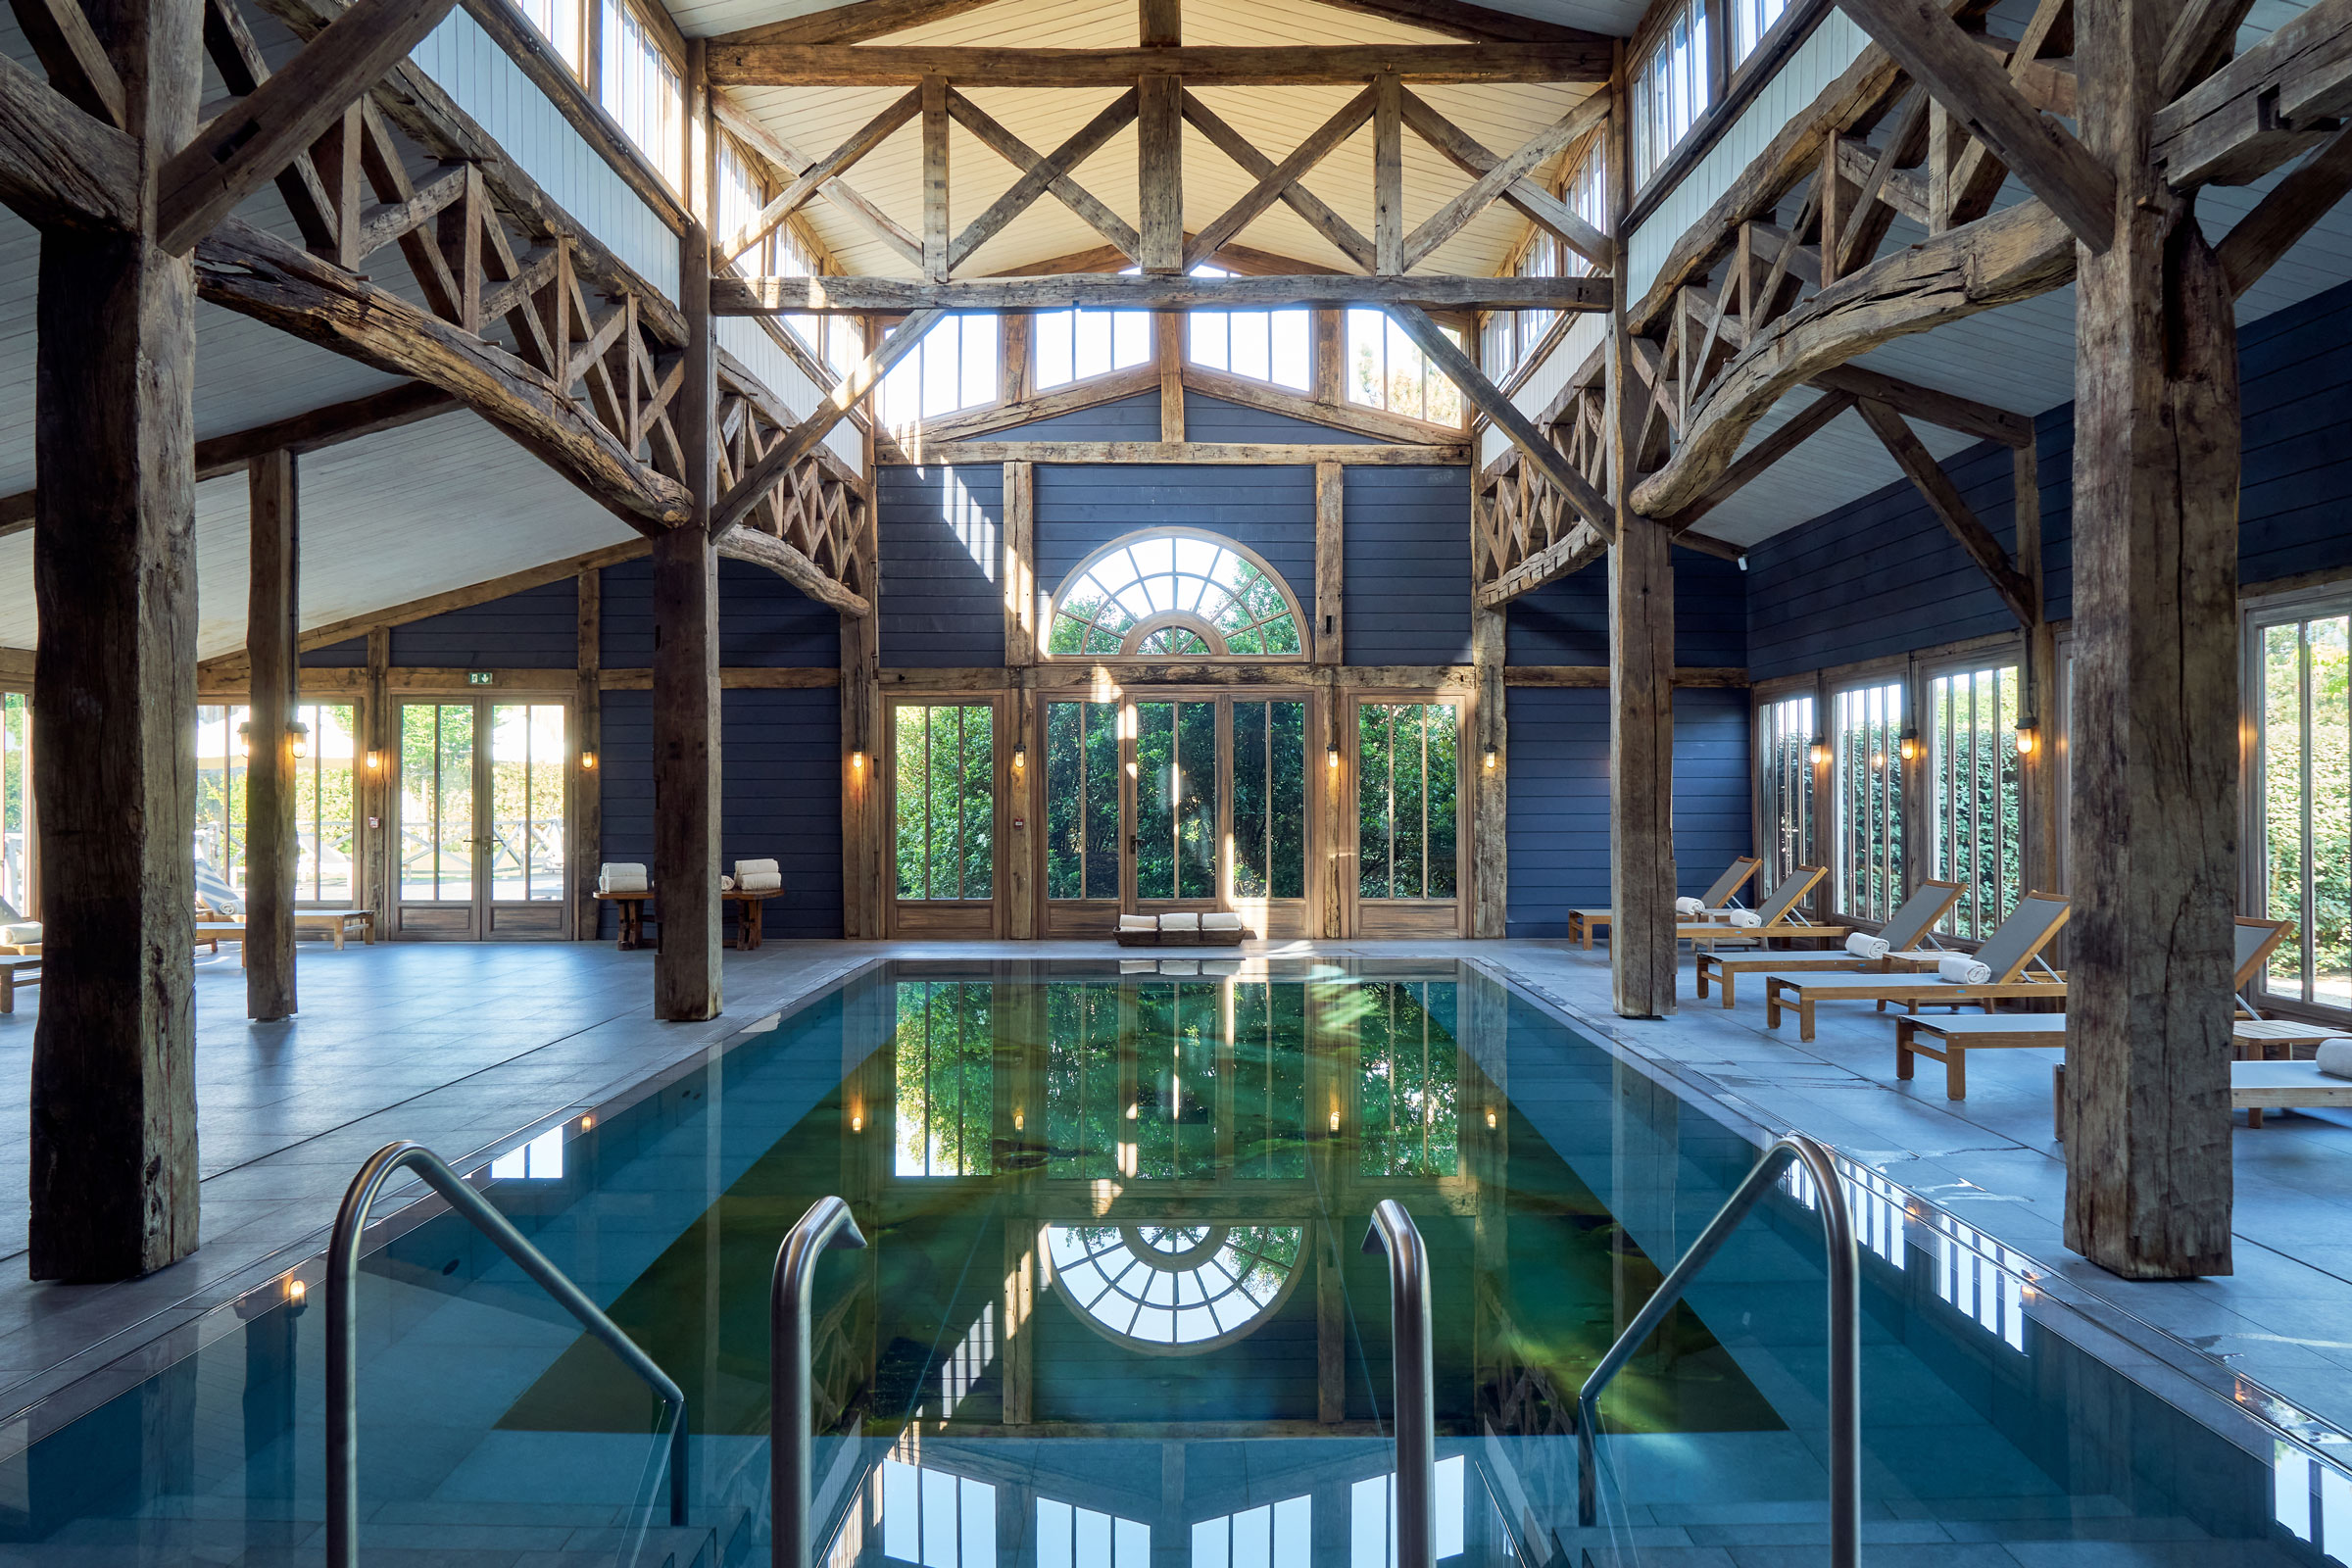 La magnifique piscine intérieure du spa des Sources de Caudalie - Crédit photo : Les Sources de Caudalie